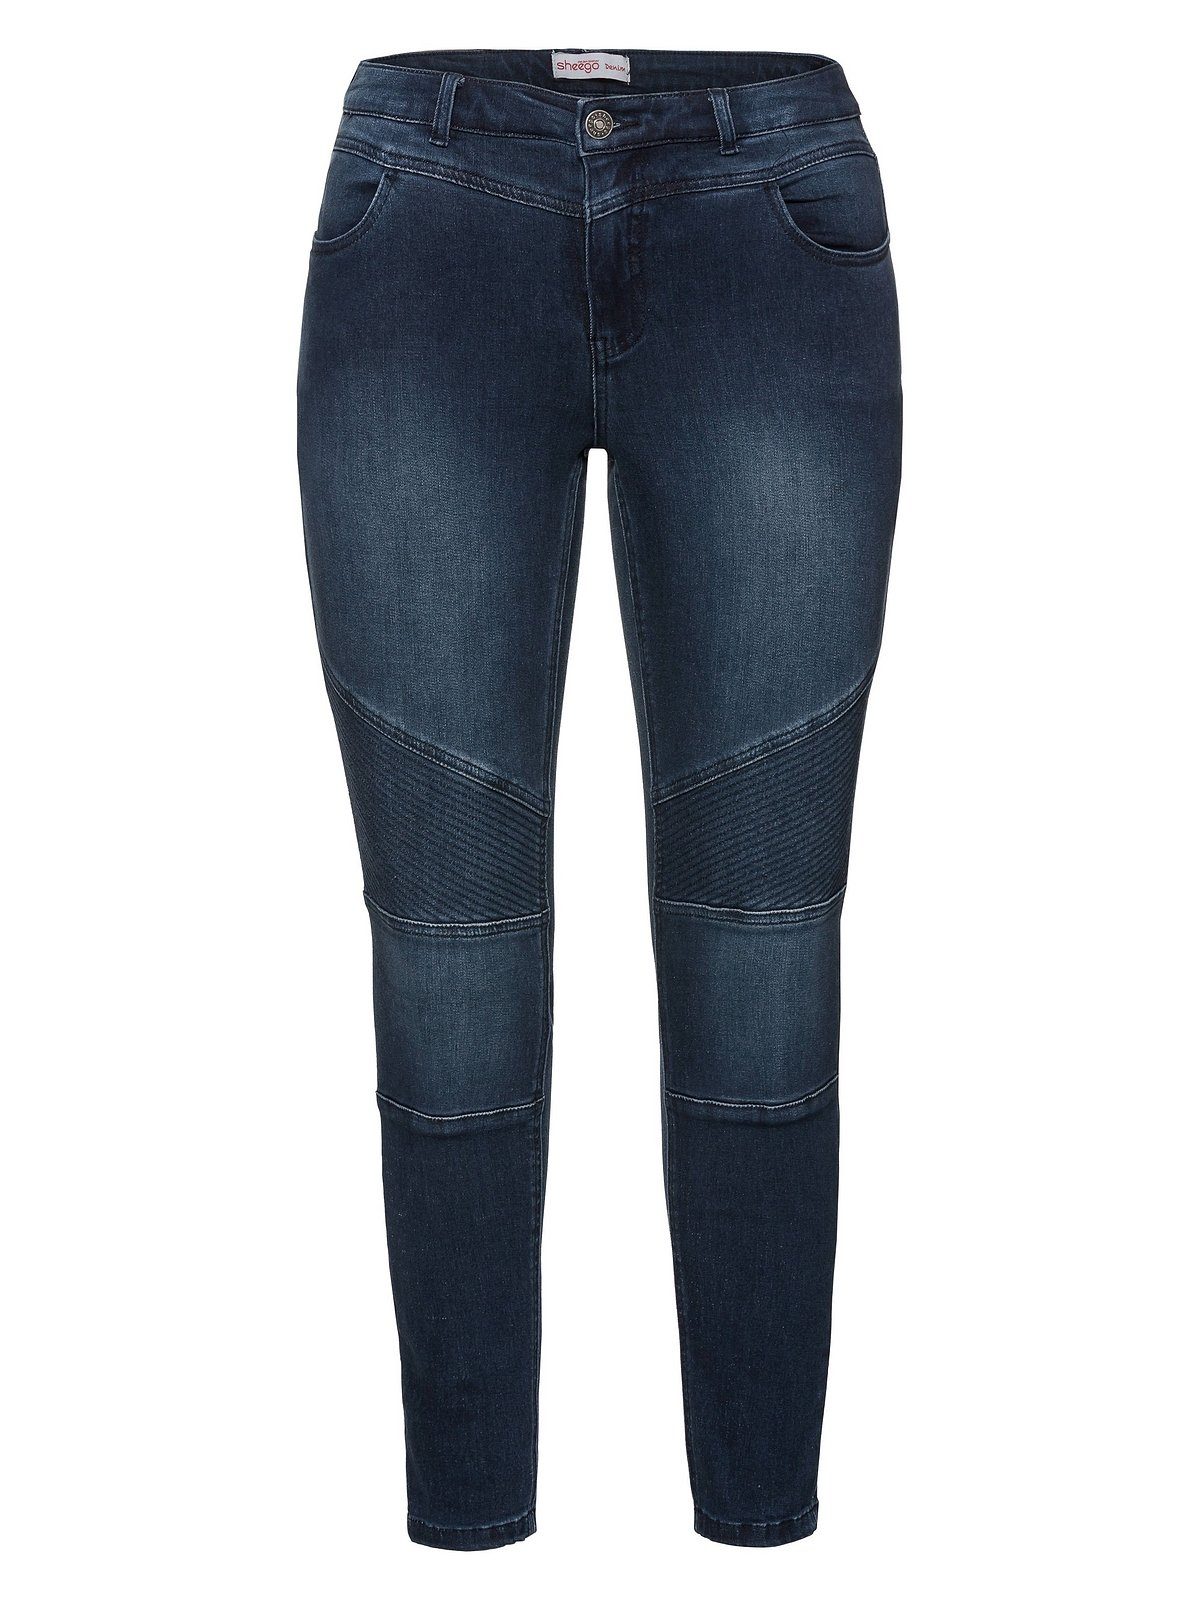 Sheego Stretch-Jeans Große Größen Power-Stretch-Qualität blue dark Denim